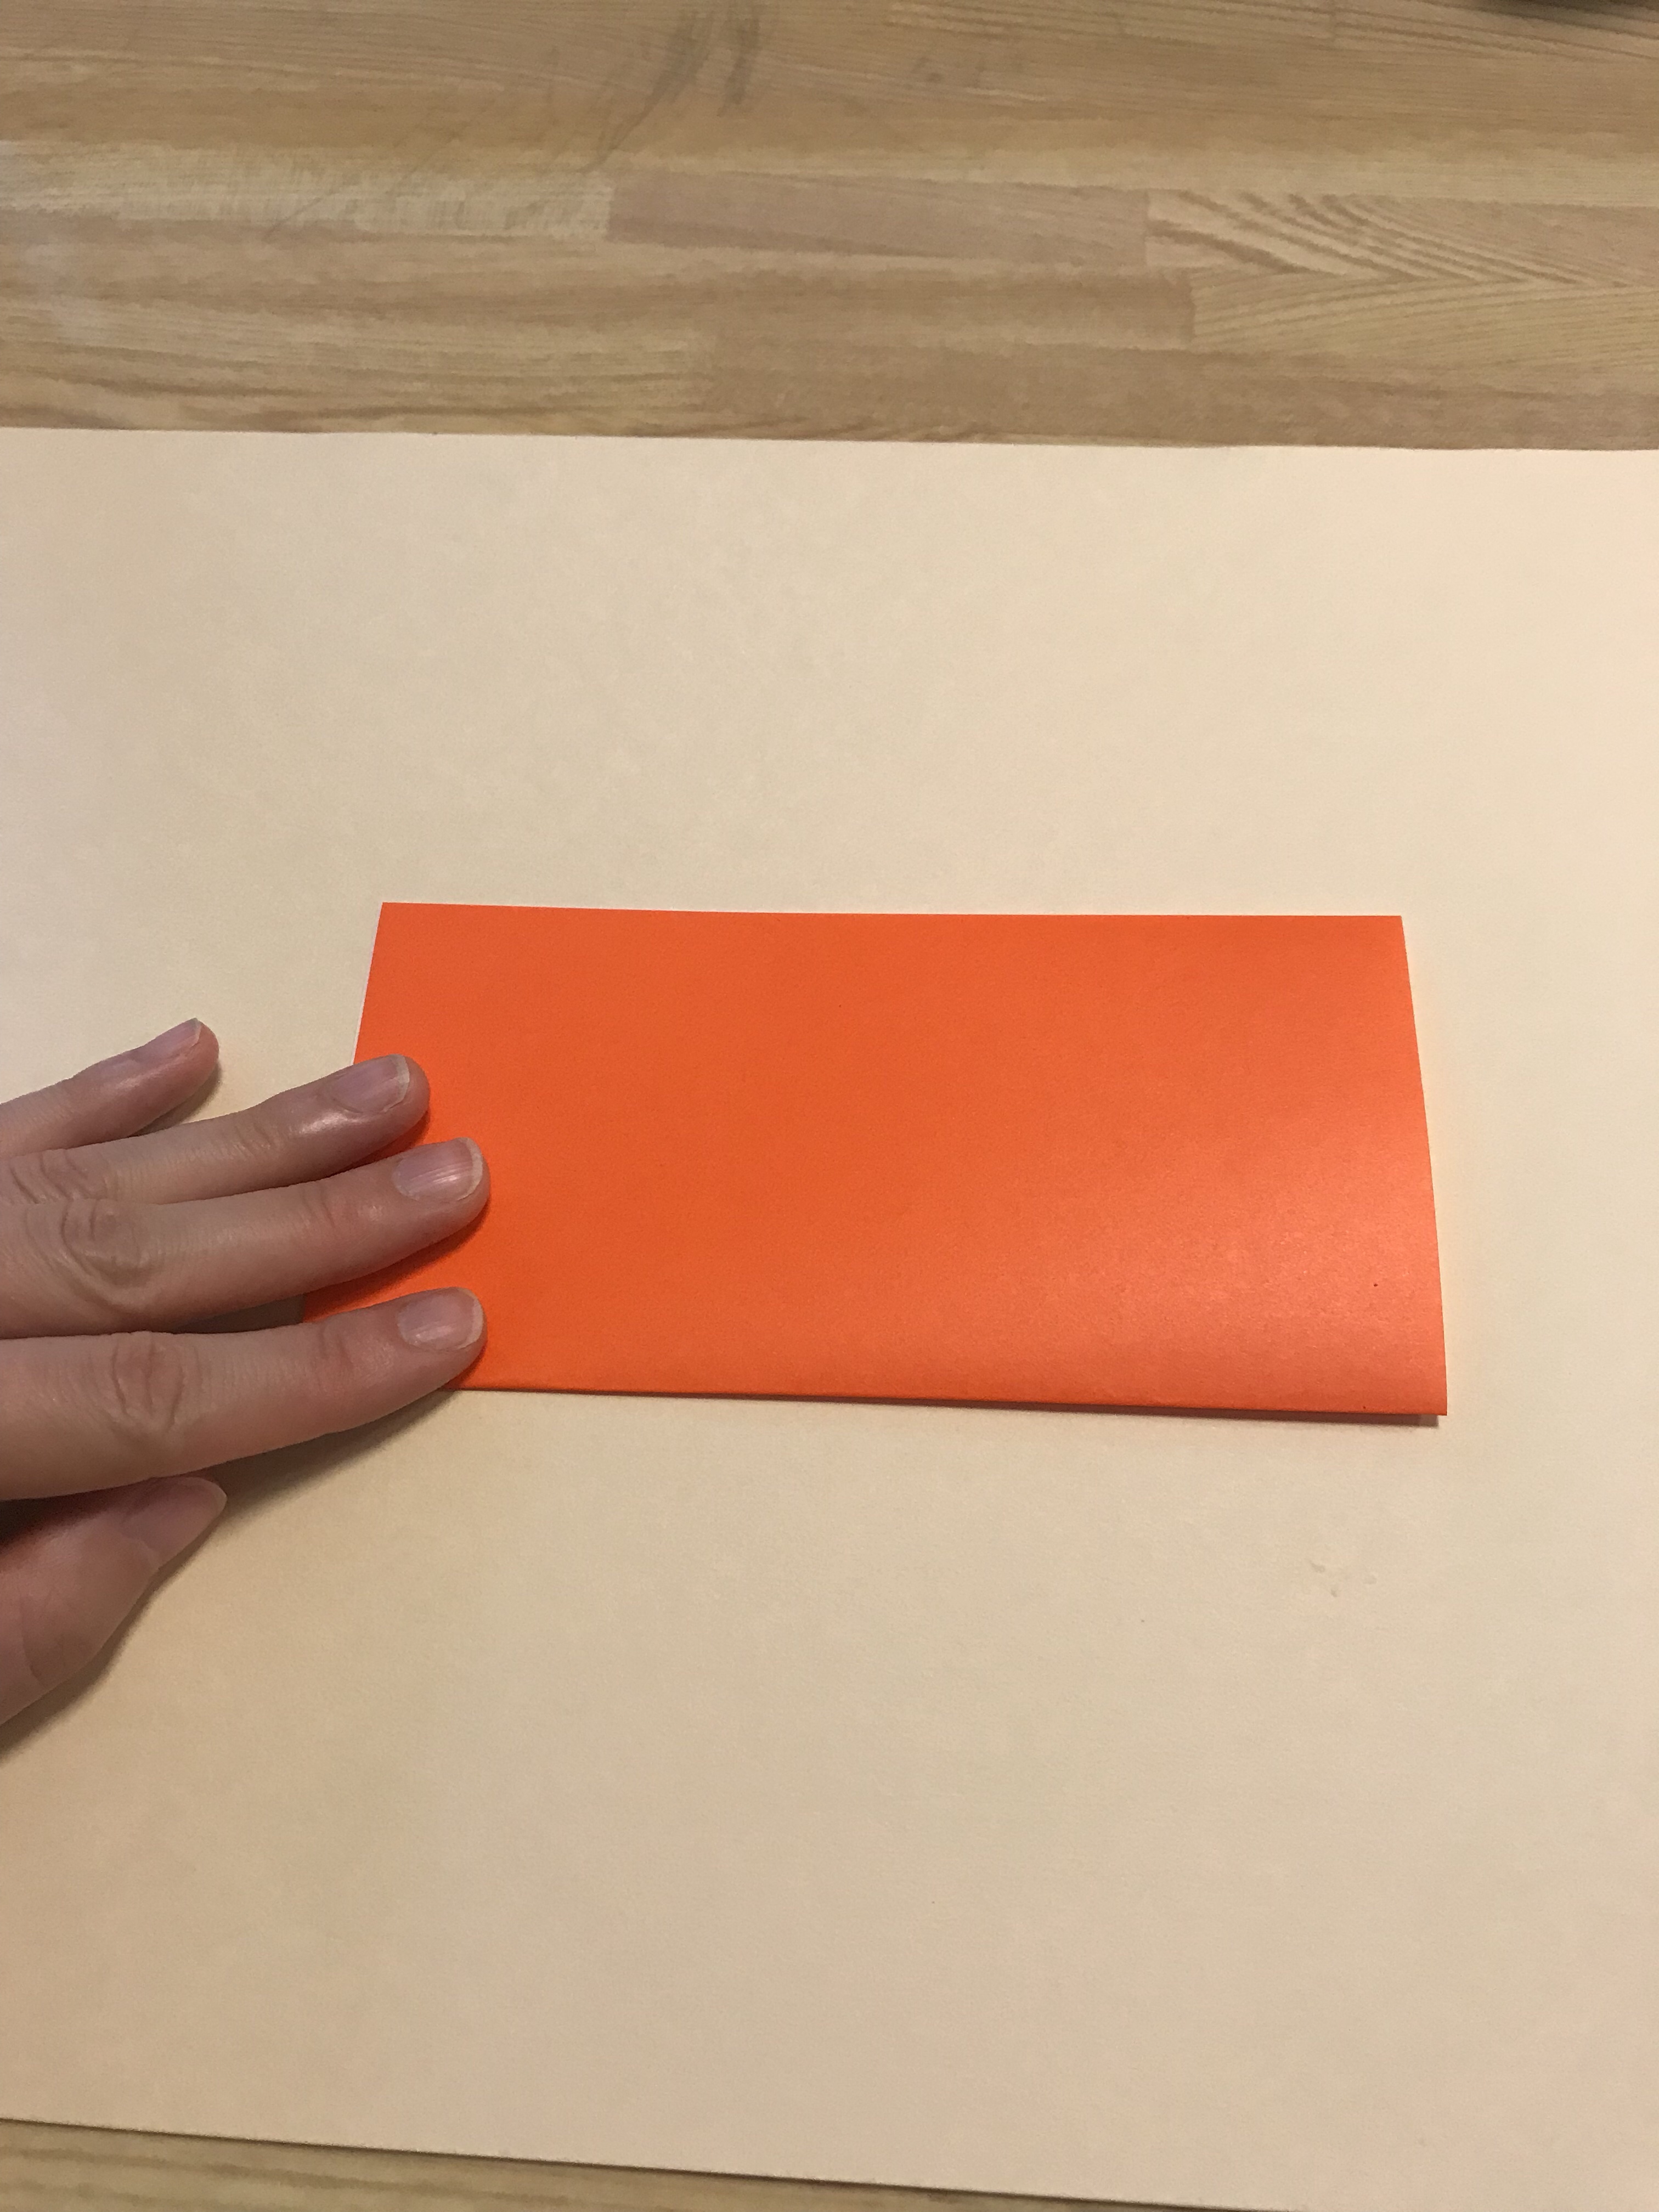 オレンジの折り紙を半分に折っている図